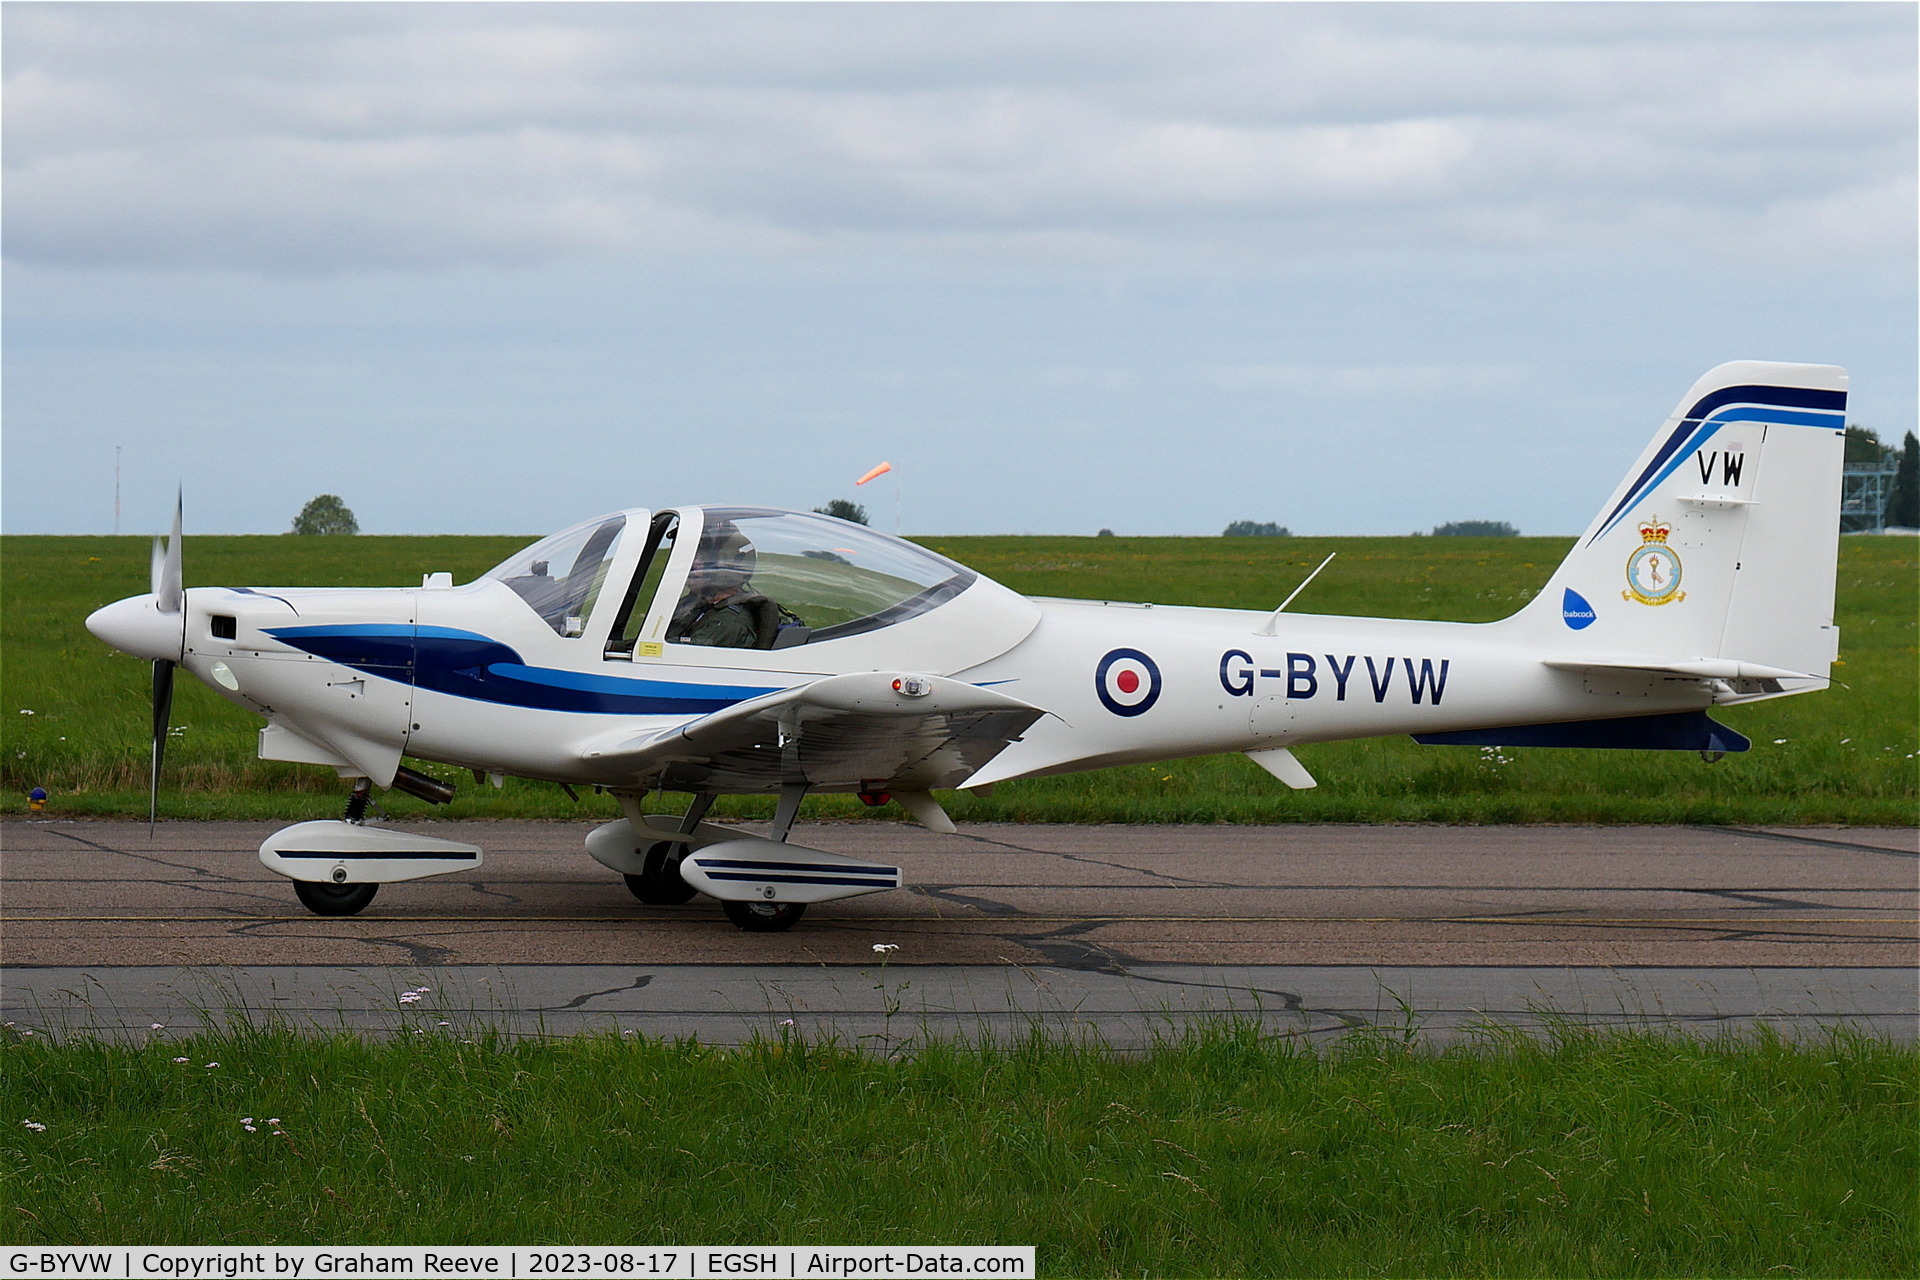 G-BYVW, 2000 Grob G-115E Tutor T1 C/N 82132/E, Just landed at Norwich.